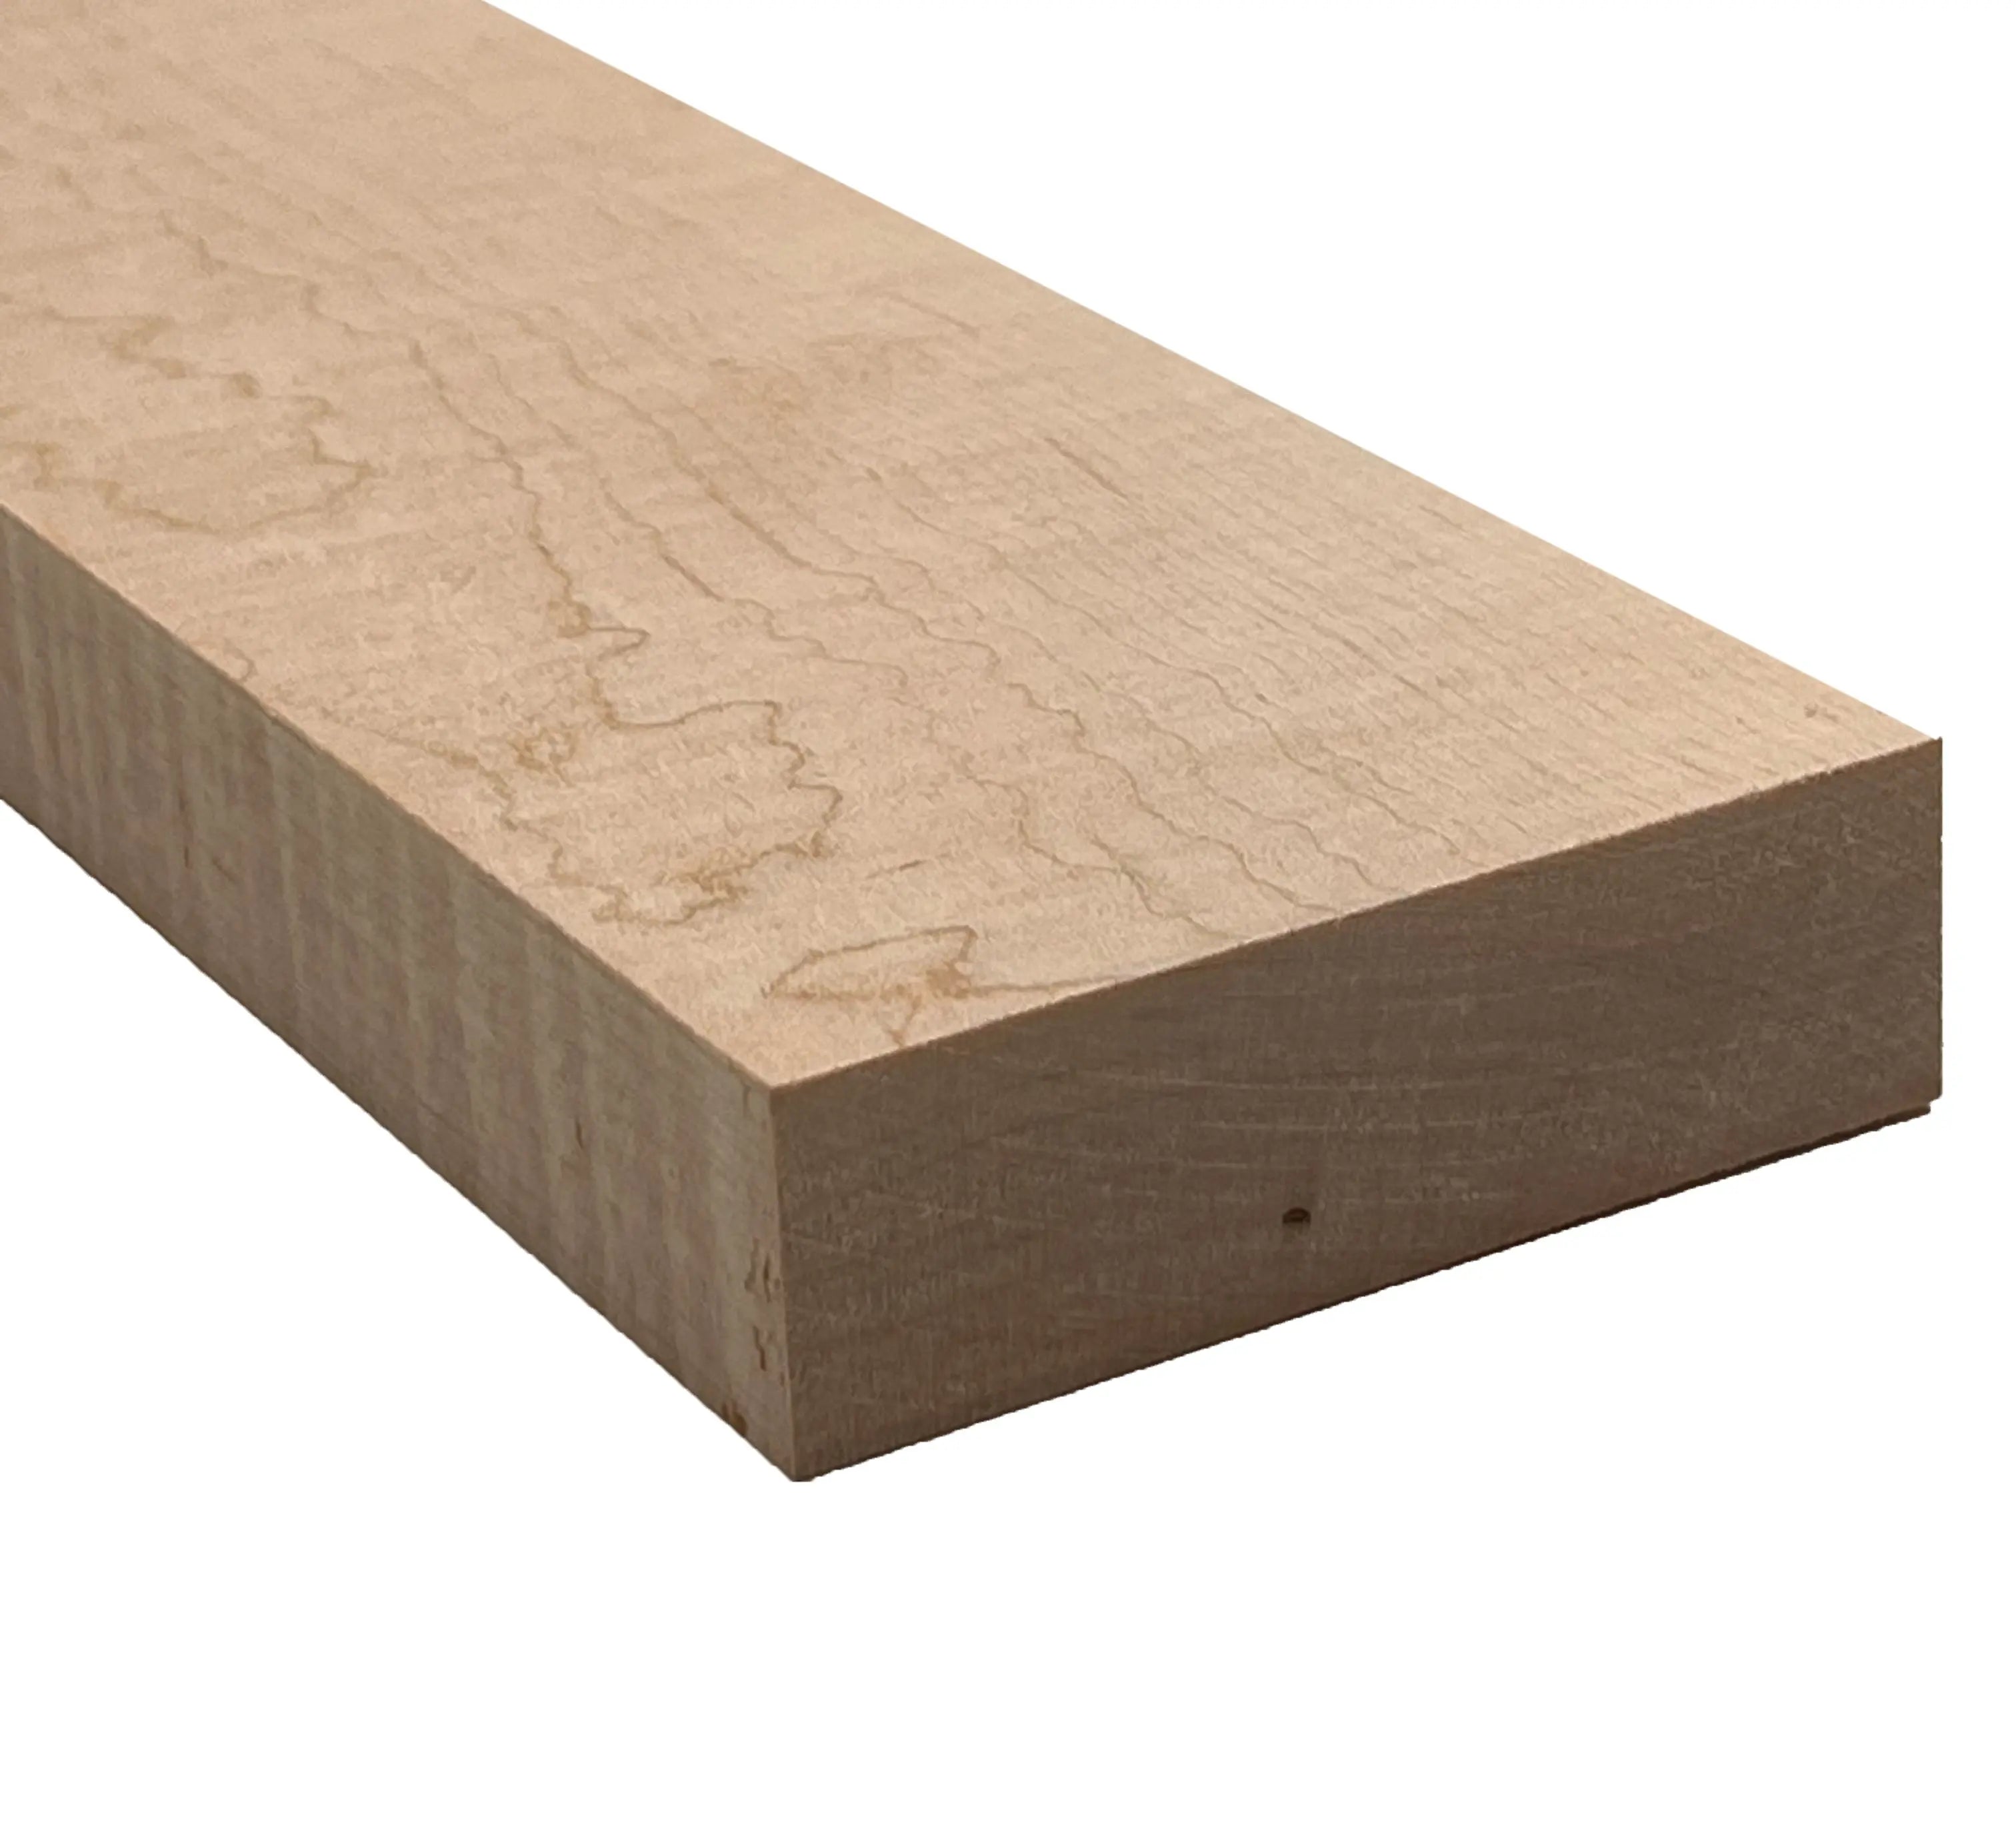  Atril de madera de arce teñido de nogal : Productos de